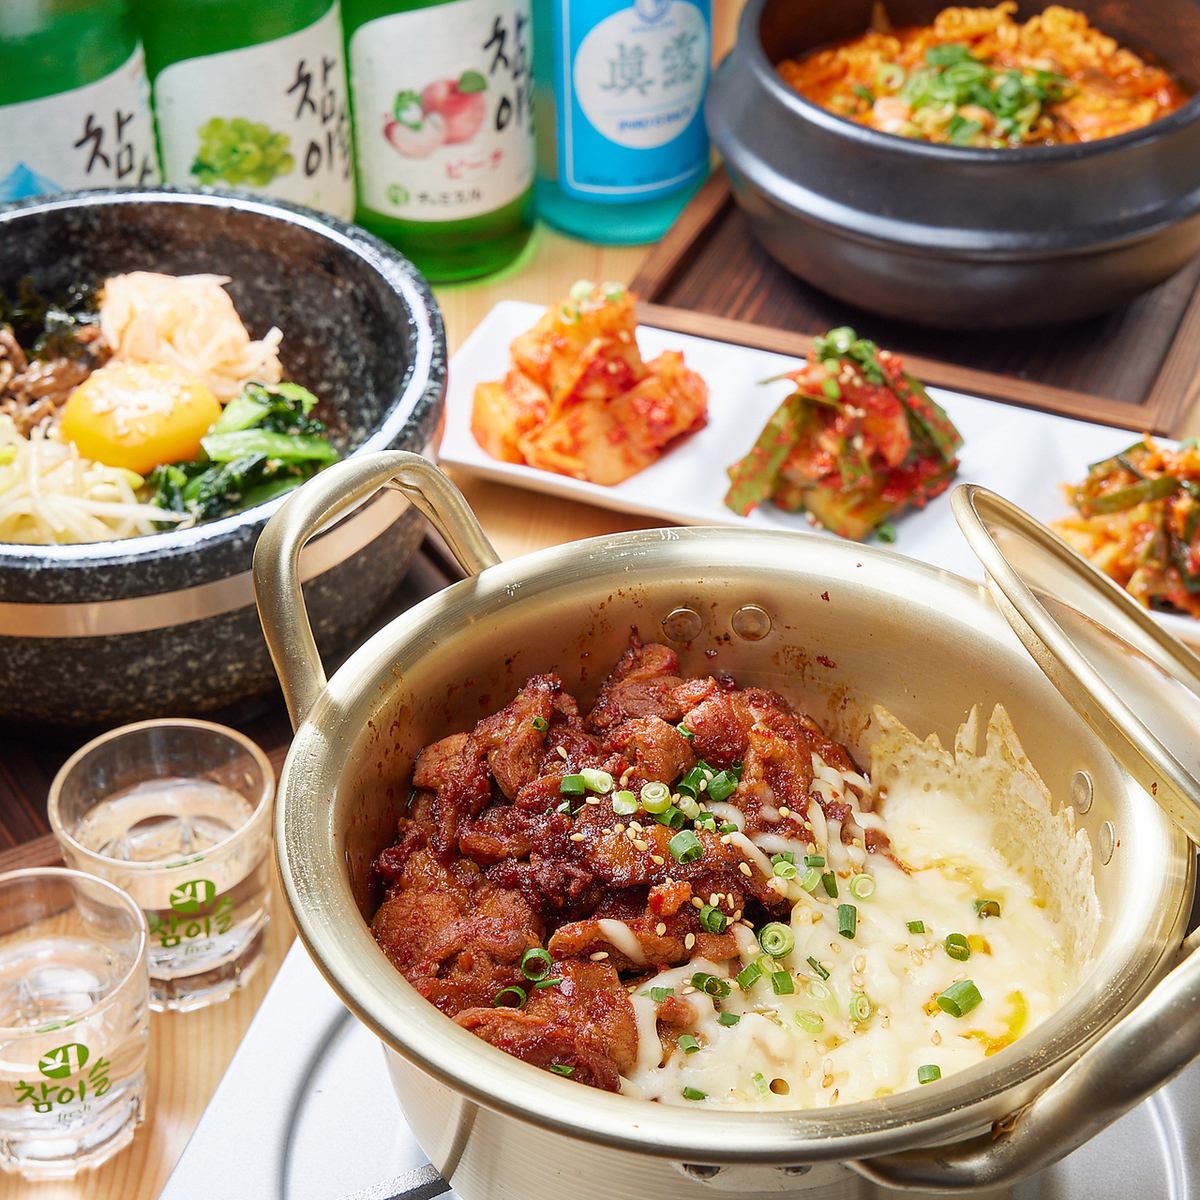 볼륨 만점! 한국 출신의 전 스시 장인이 만들어내는 다른 곳에서는 맛볼 수 없는 창작 한국 요리에 혀고